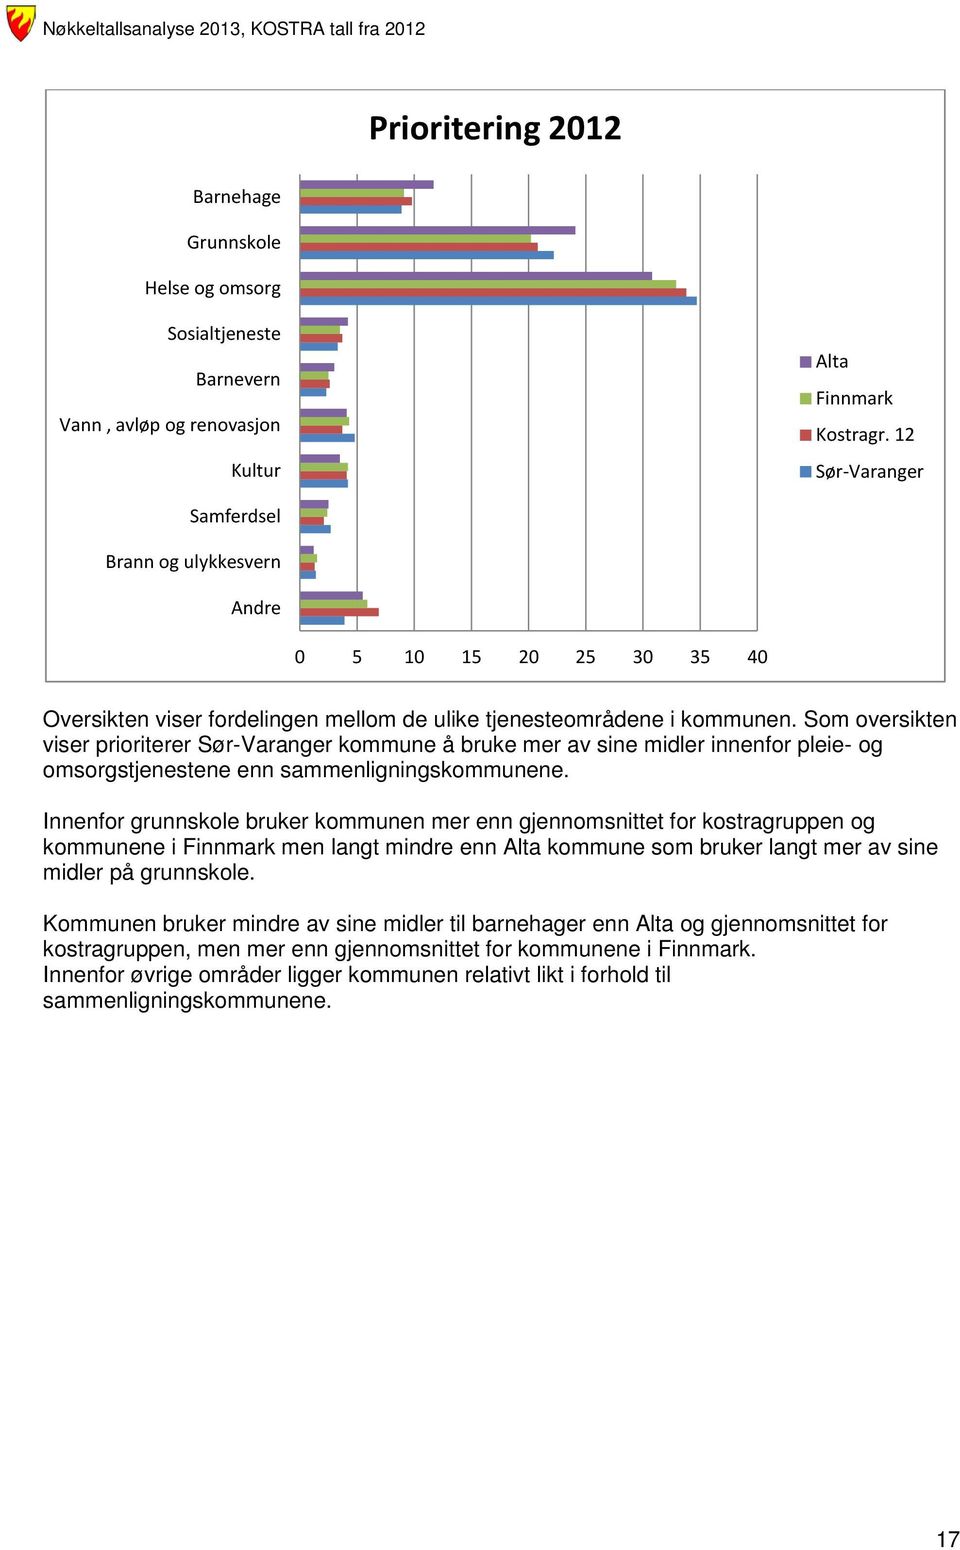 Som oversikten viser prioriterer Sør-Varanger kommune å bruke mer av sine midler innenfor pleie- og omsorgstjenestene enn sammenligningskommunene.